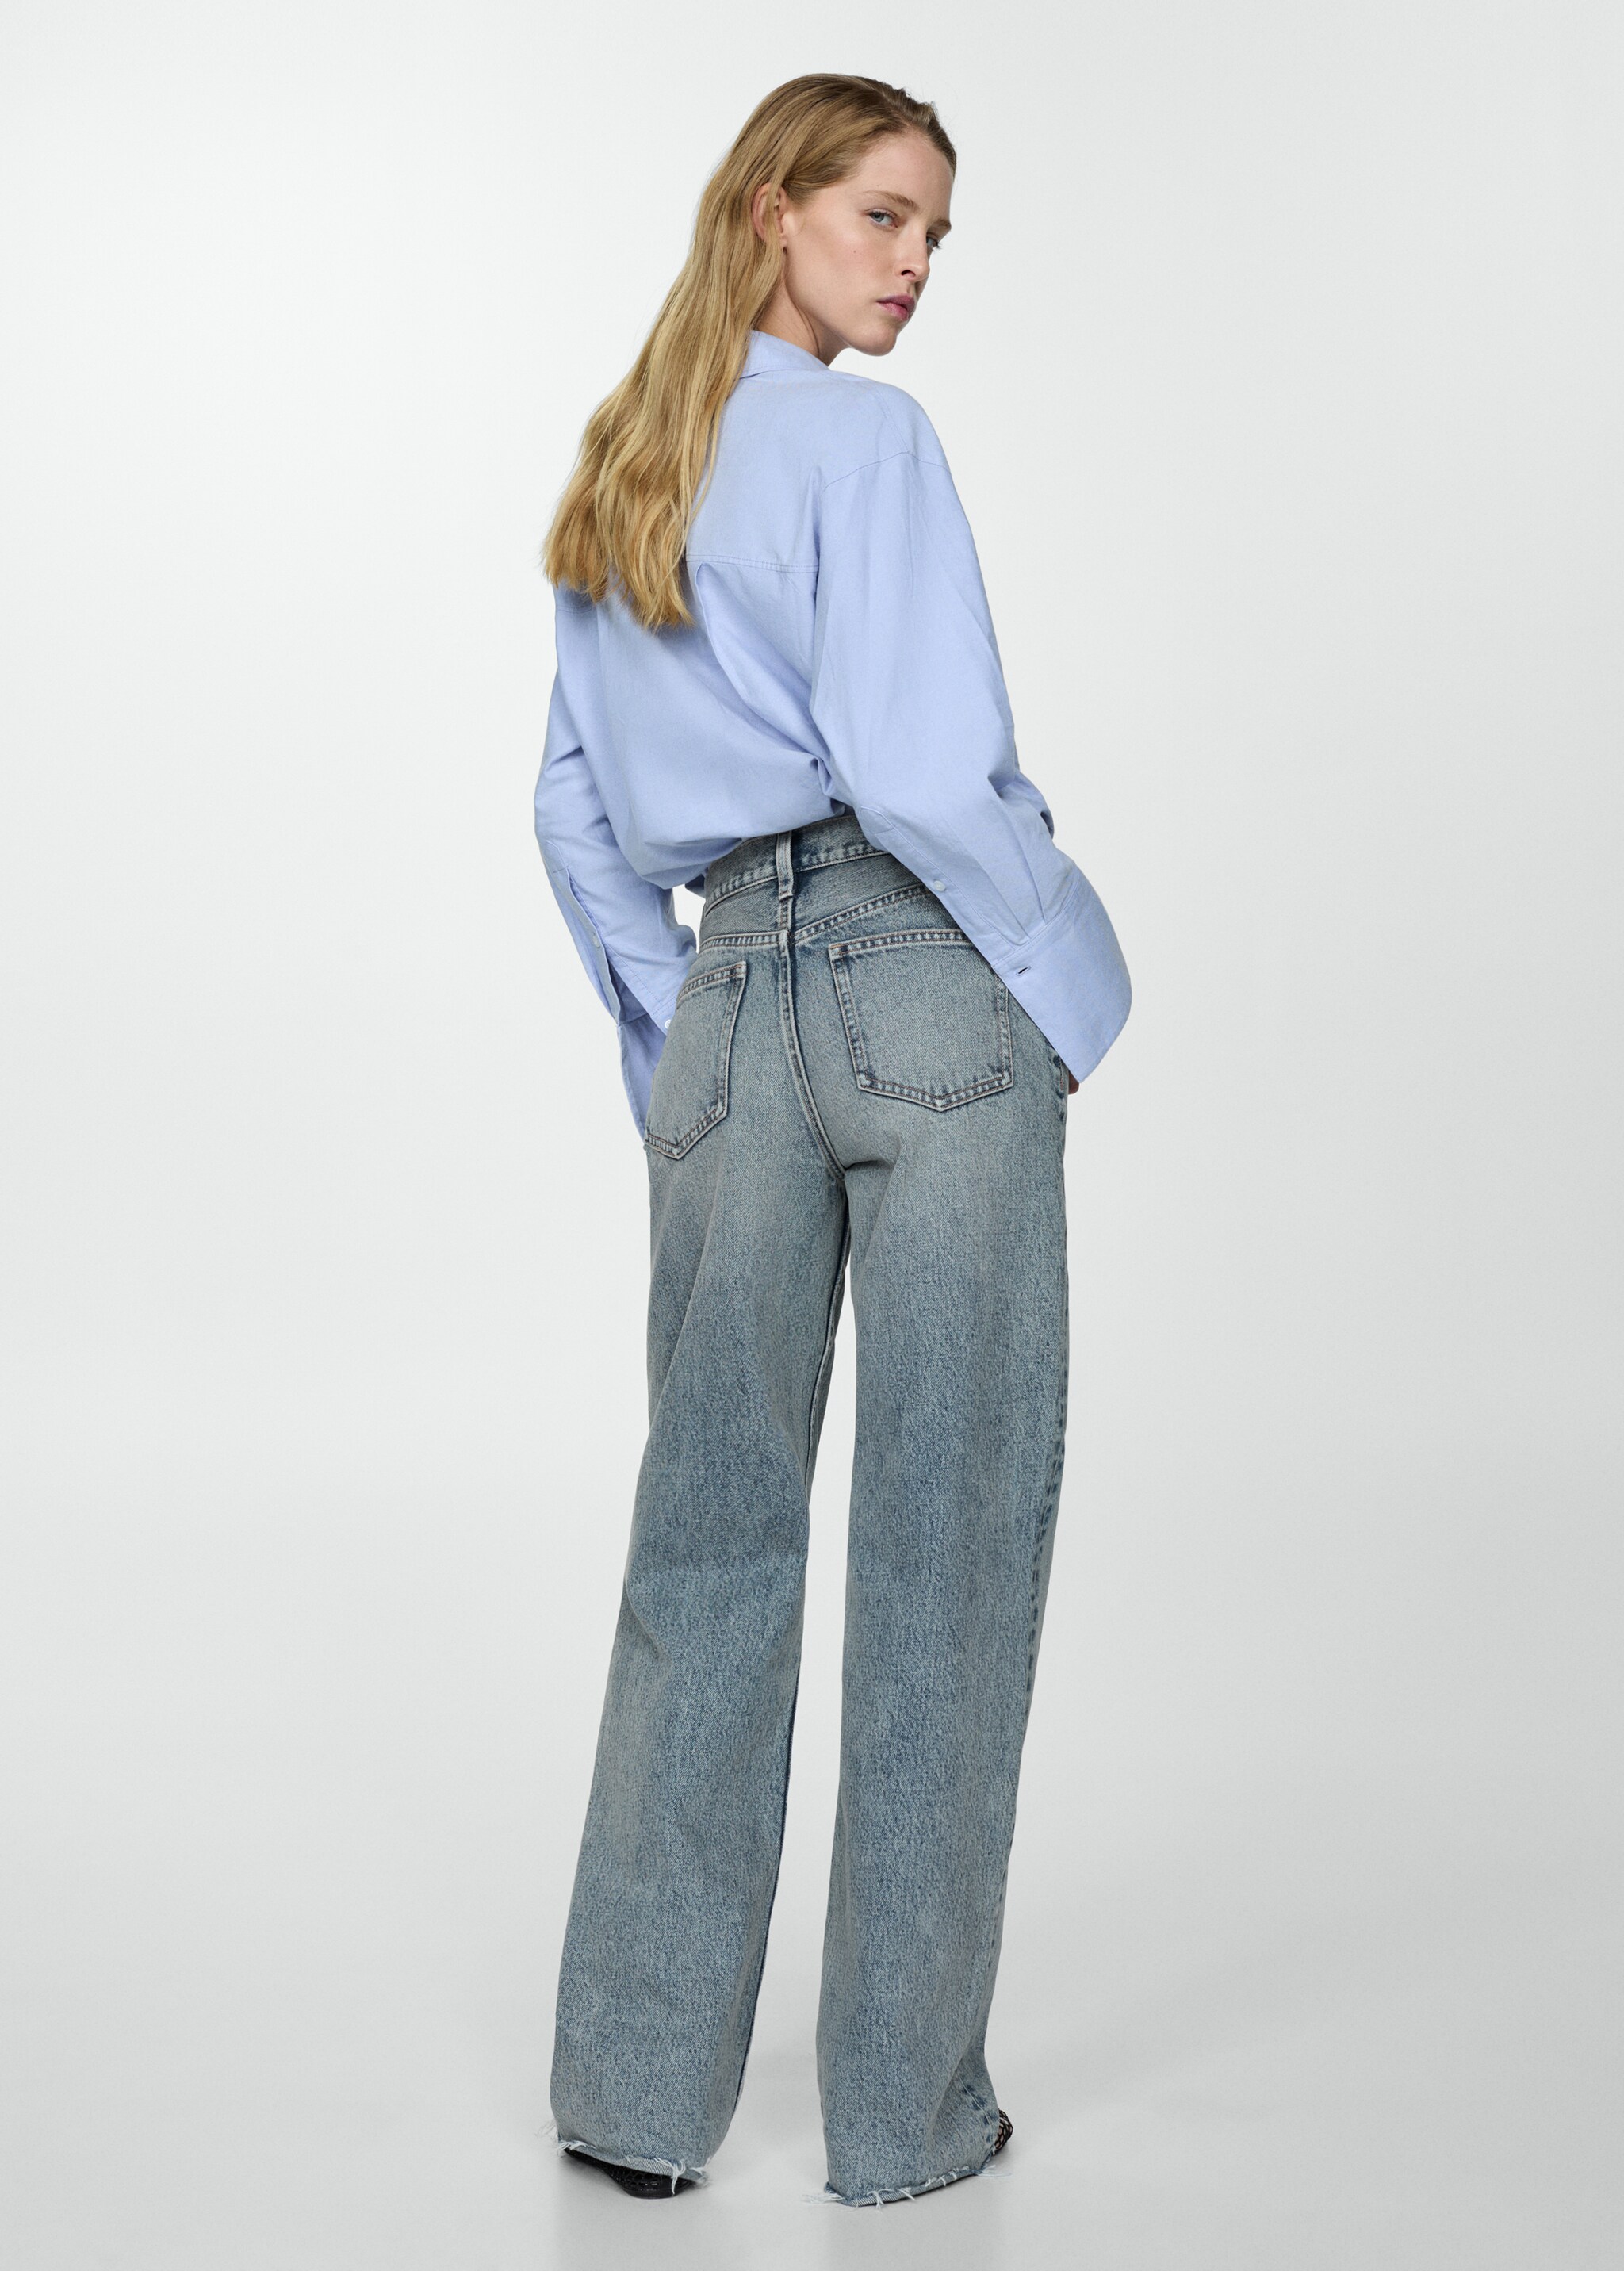 Jeans wideleg tiro alto - Reverso del artículo